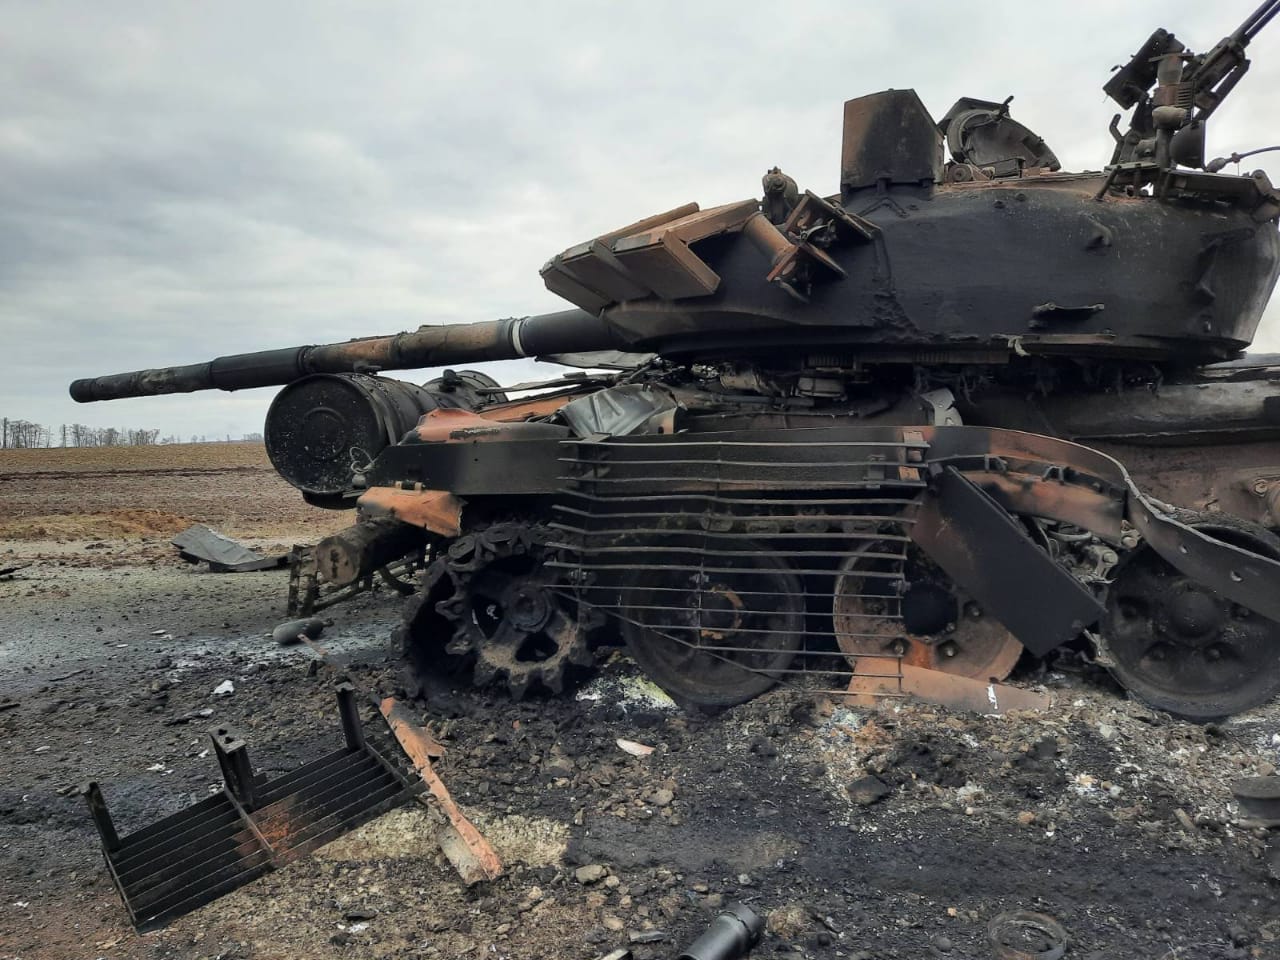 Armia ukraińska podała straty rosyjskiego wojska. Ponad 5 tys. zabitych żołnierzy, zniszczonych setki pojazdów (zdjęcia, wideo)